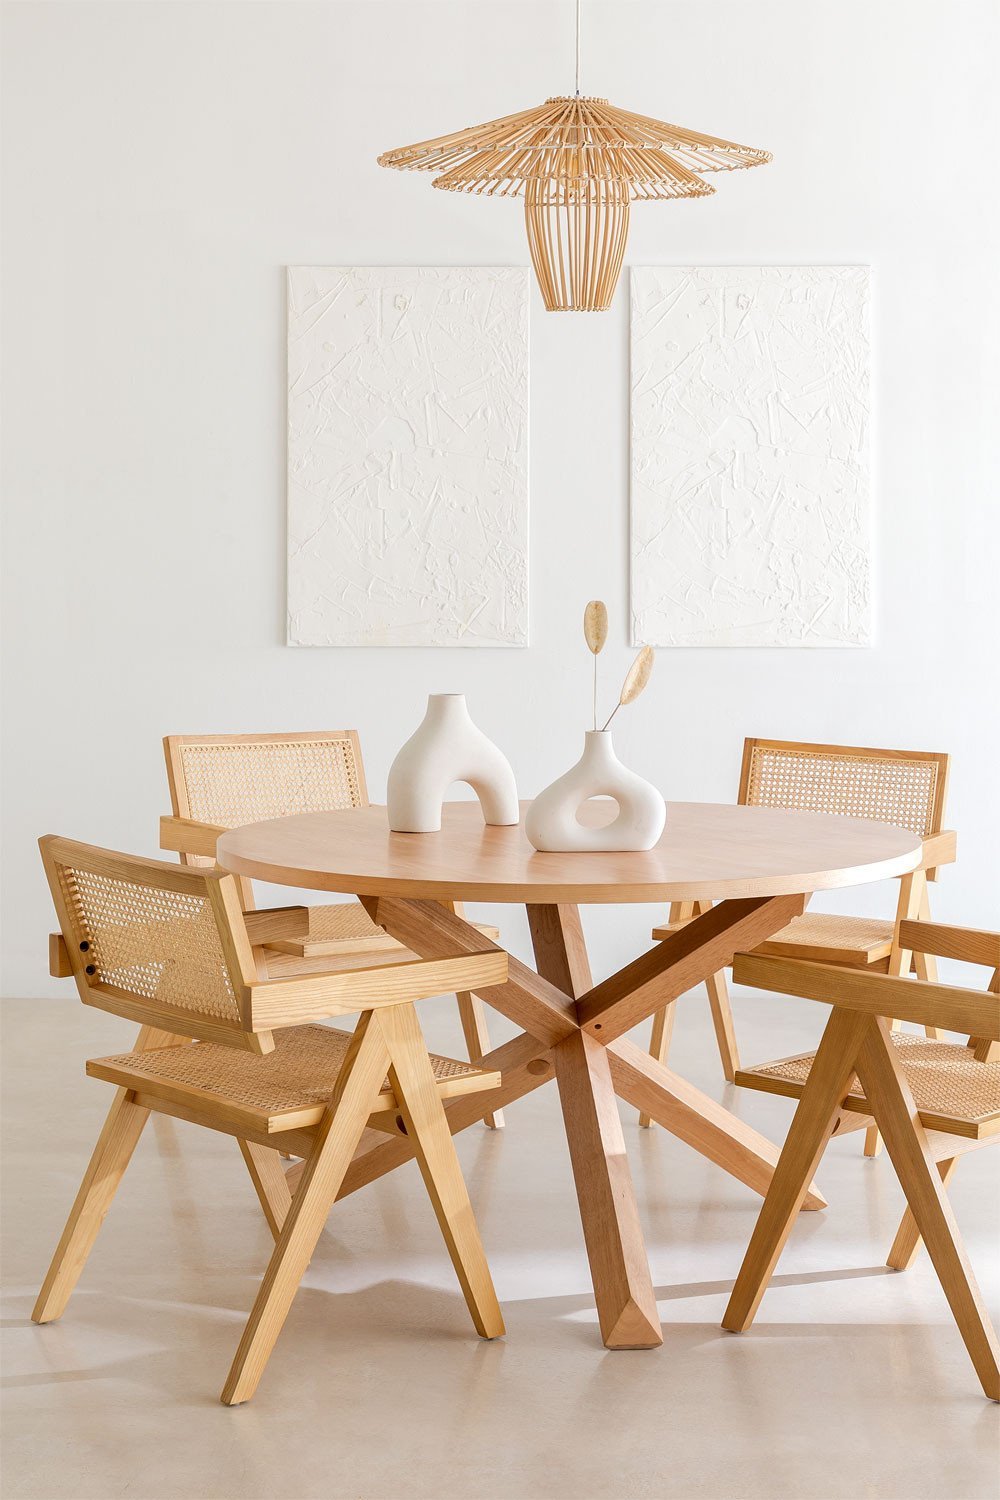 Zestaw okrągłego stołu do jadalni Mieren (ø120 cm) i 4 krzesła z podłokietnikami z drewna jesionowego i rattanu w Lali Style, obrazek w galerii 1